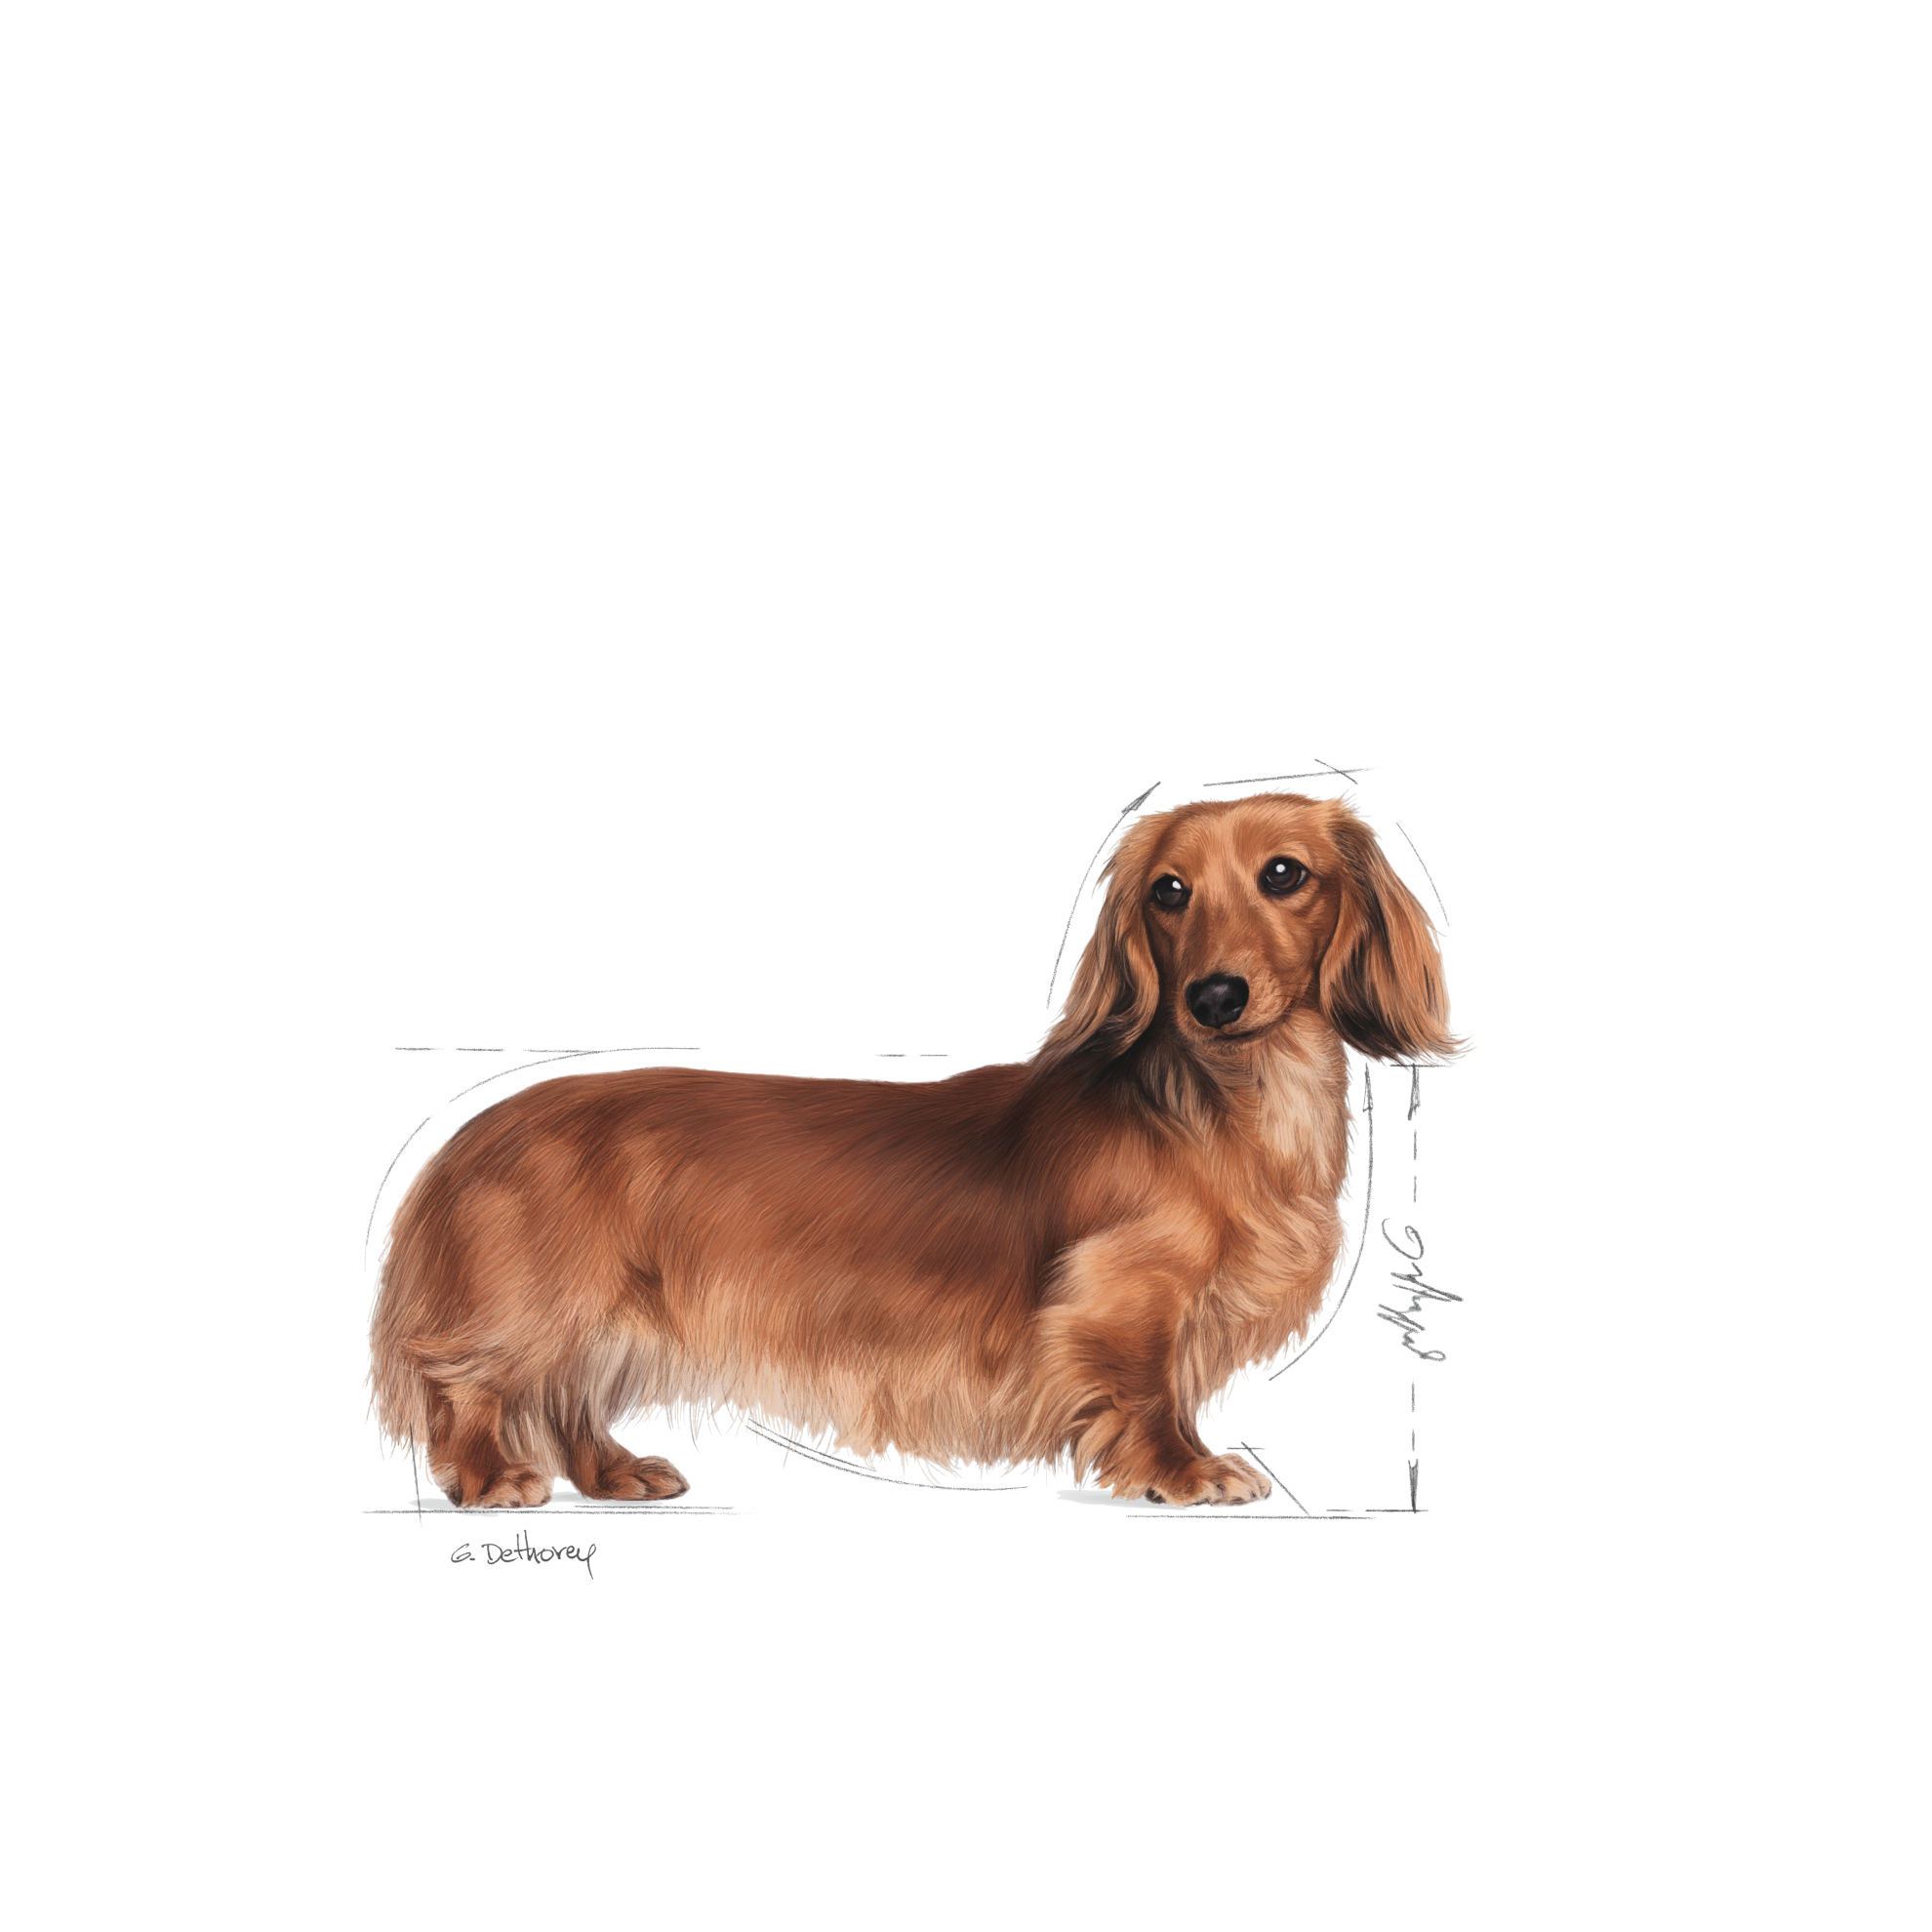 royal canin dachshund